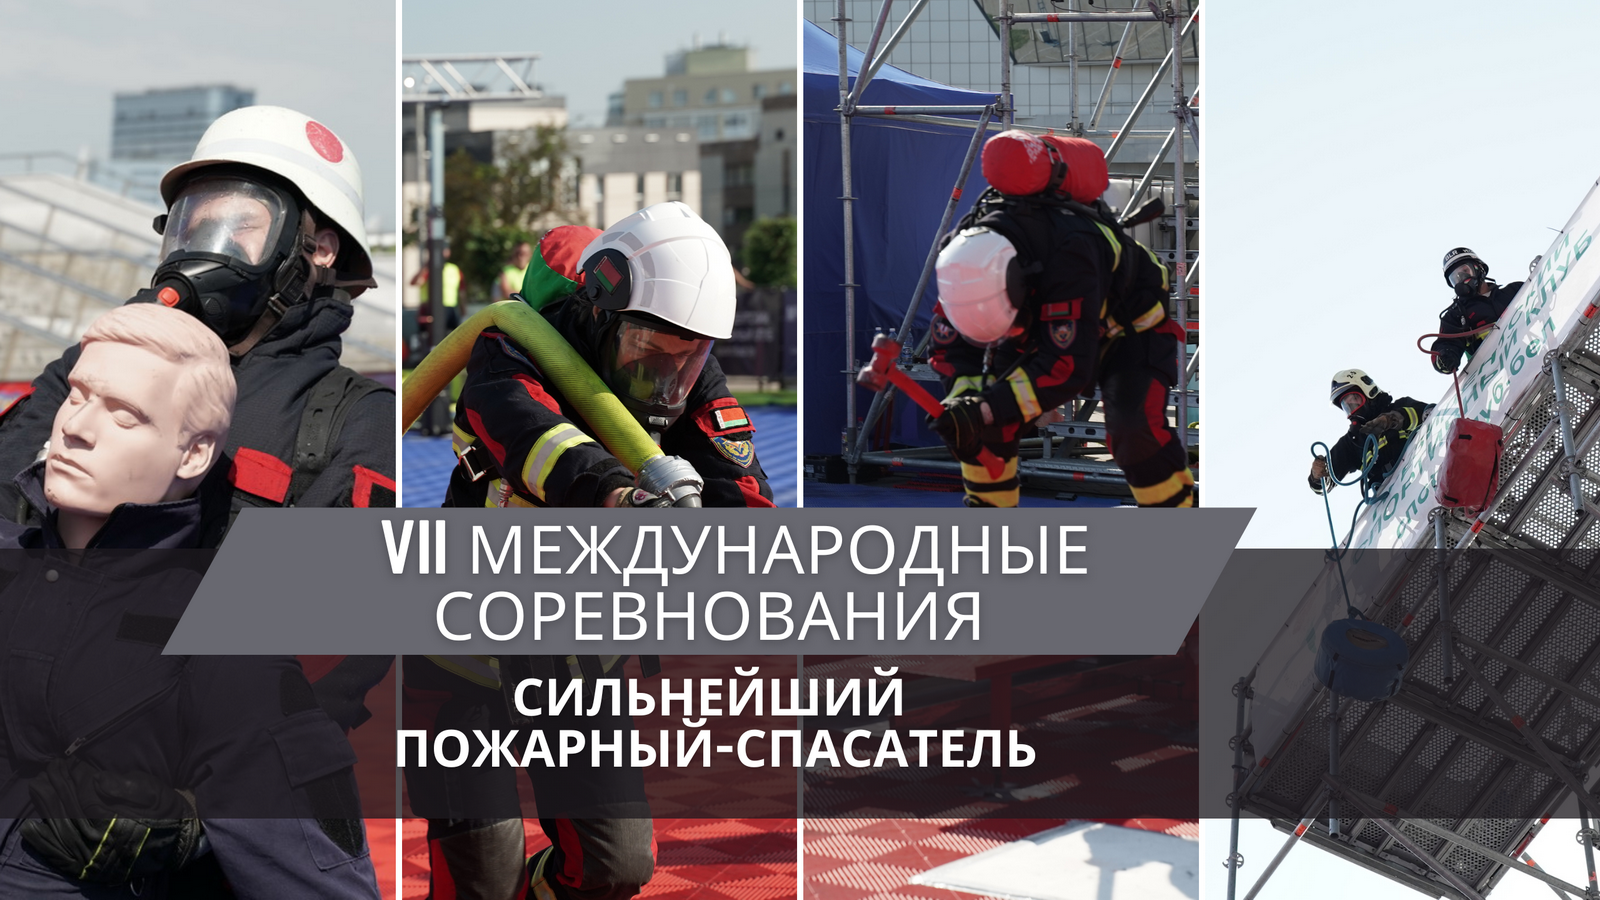 В День города в Минске пройдут международные соревнования «Сильнейший пожарный-спасатель» 